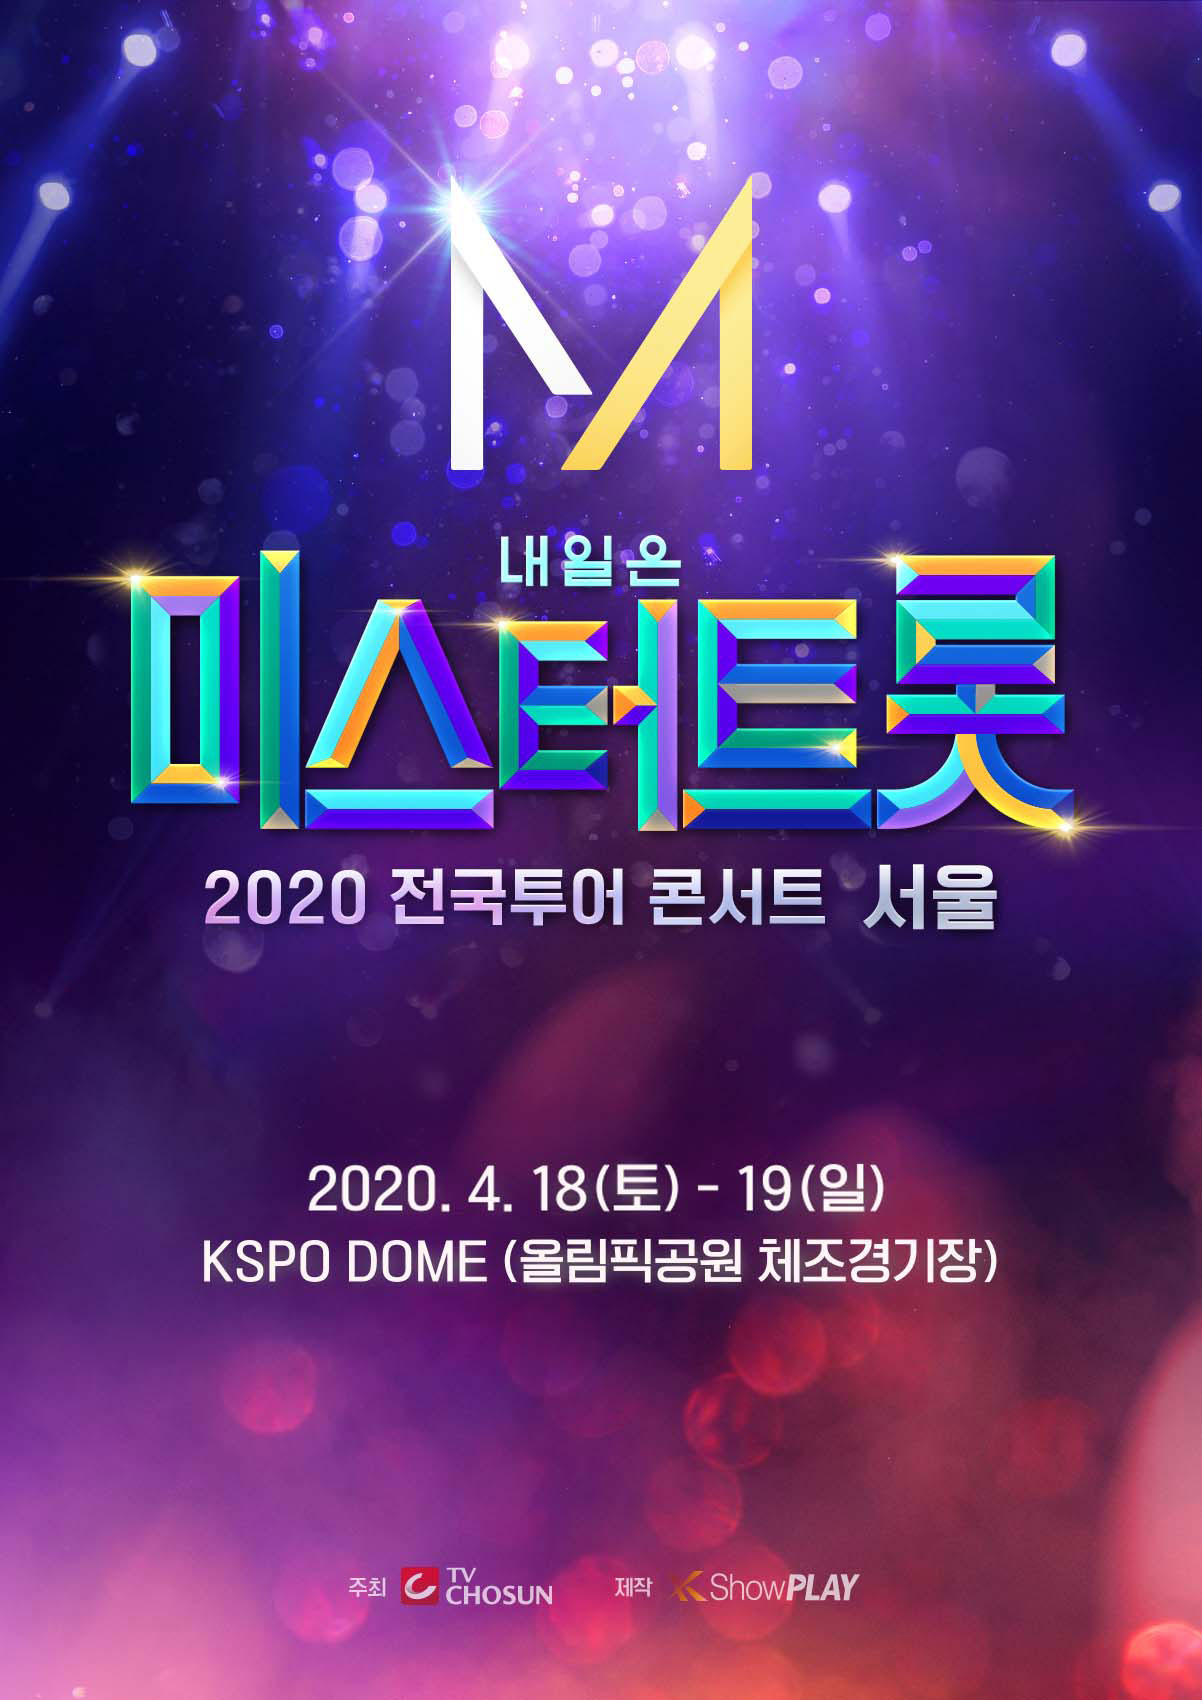 '미스터트롯' 전국 투어 서울 콘서트, 티켓 오픈 10분만 전석 매진 기염